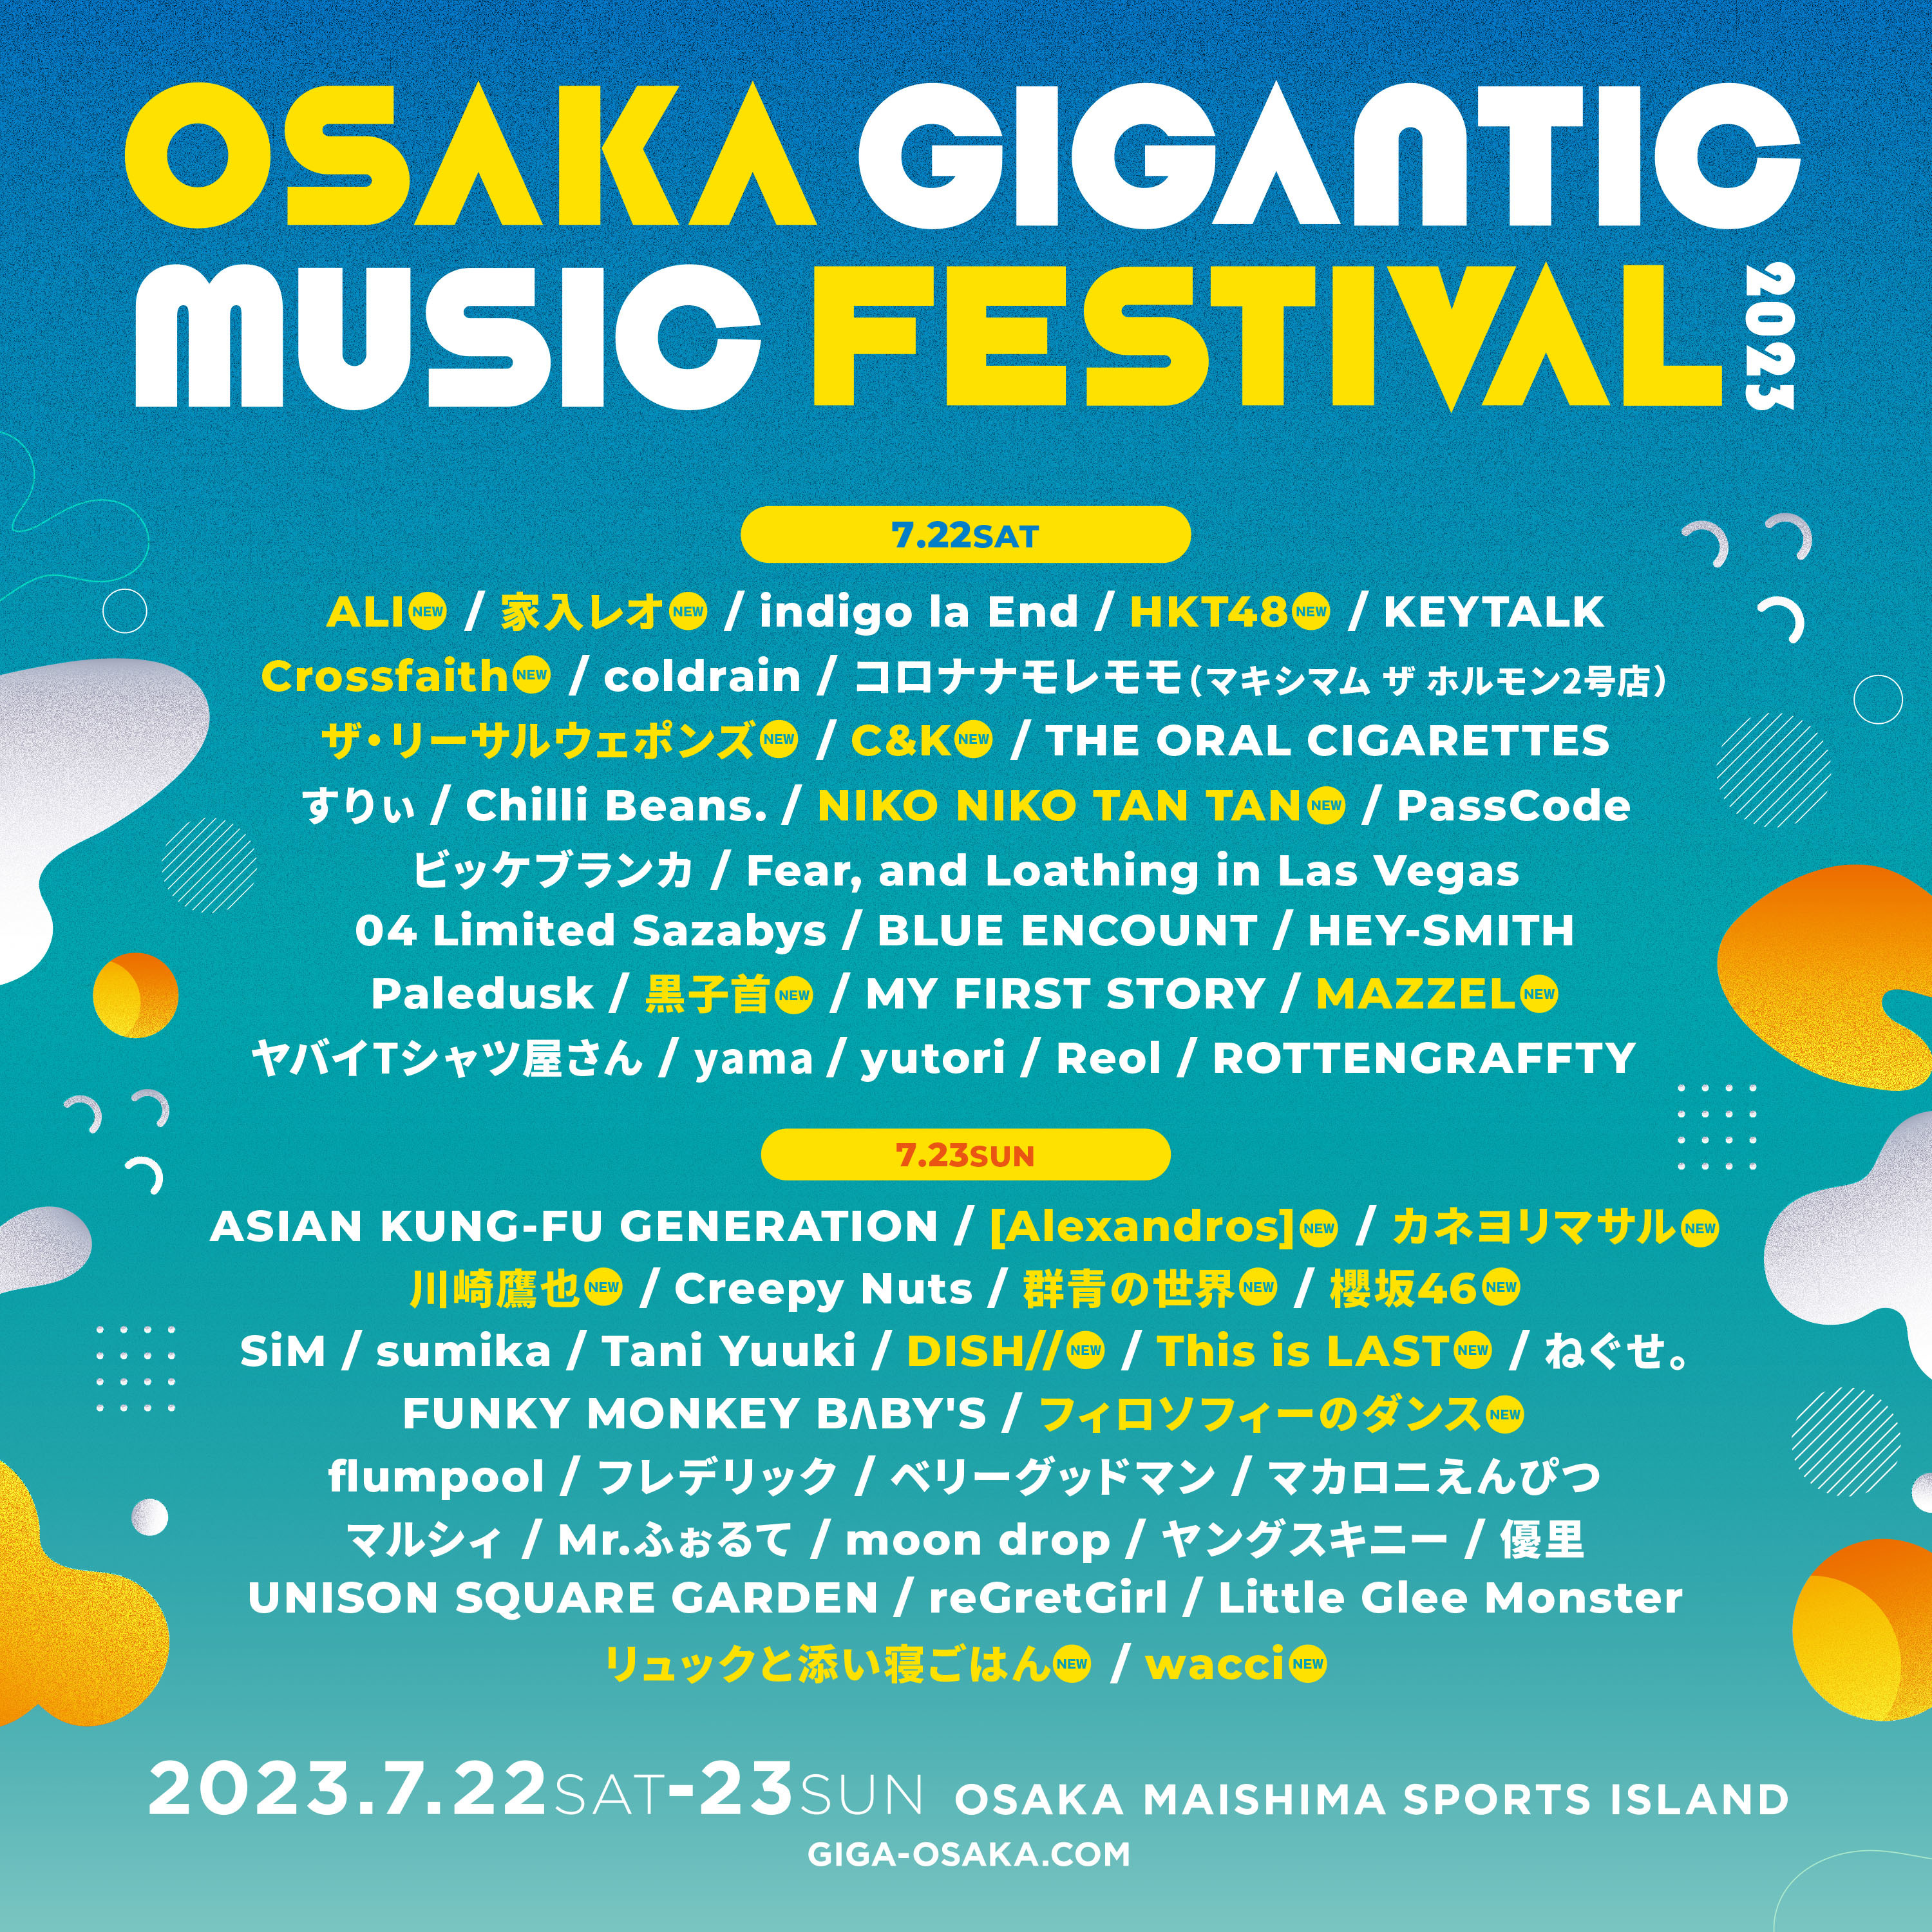 『OSAKA GIGANTIC MUSIC FESTIVAL』